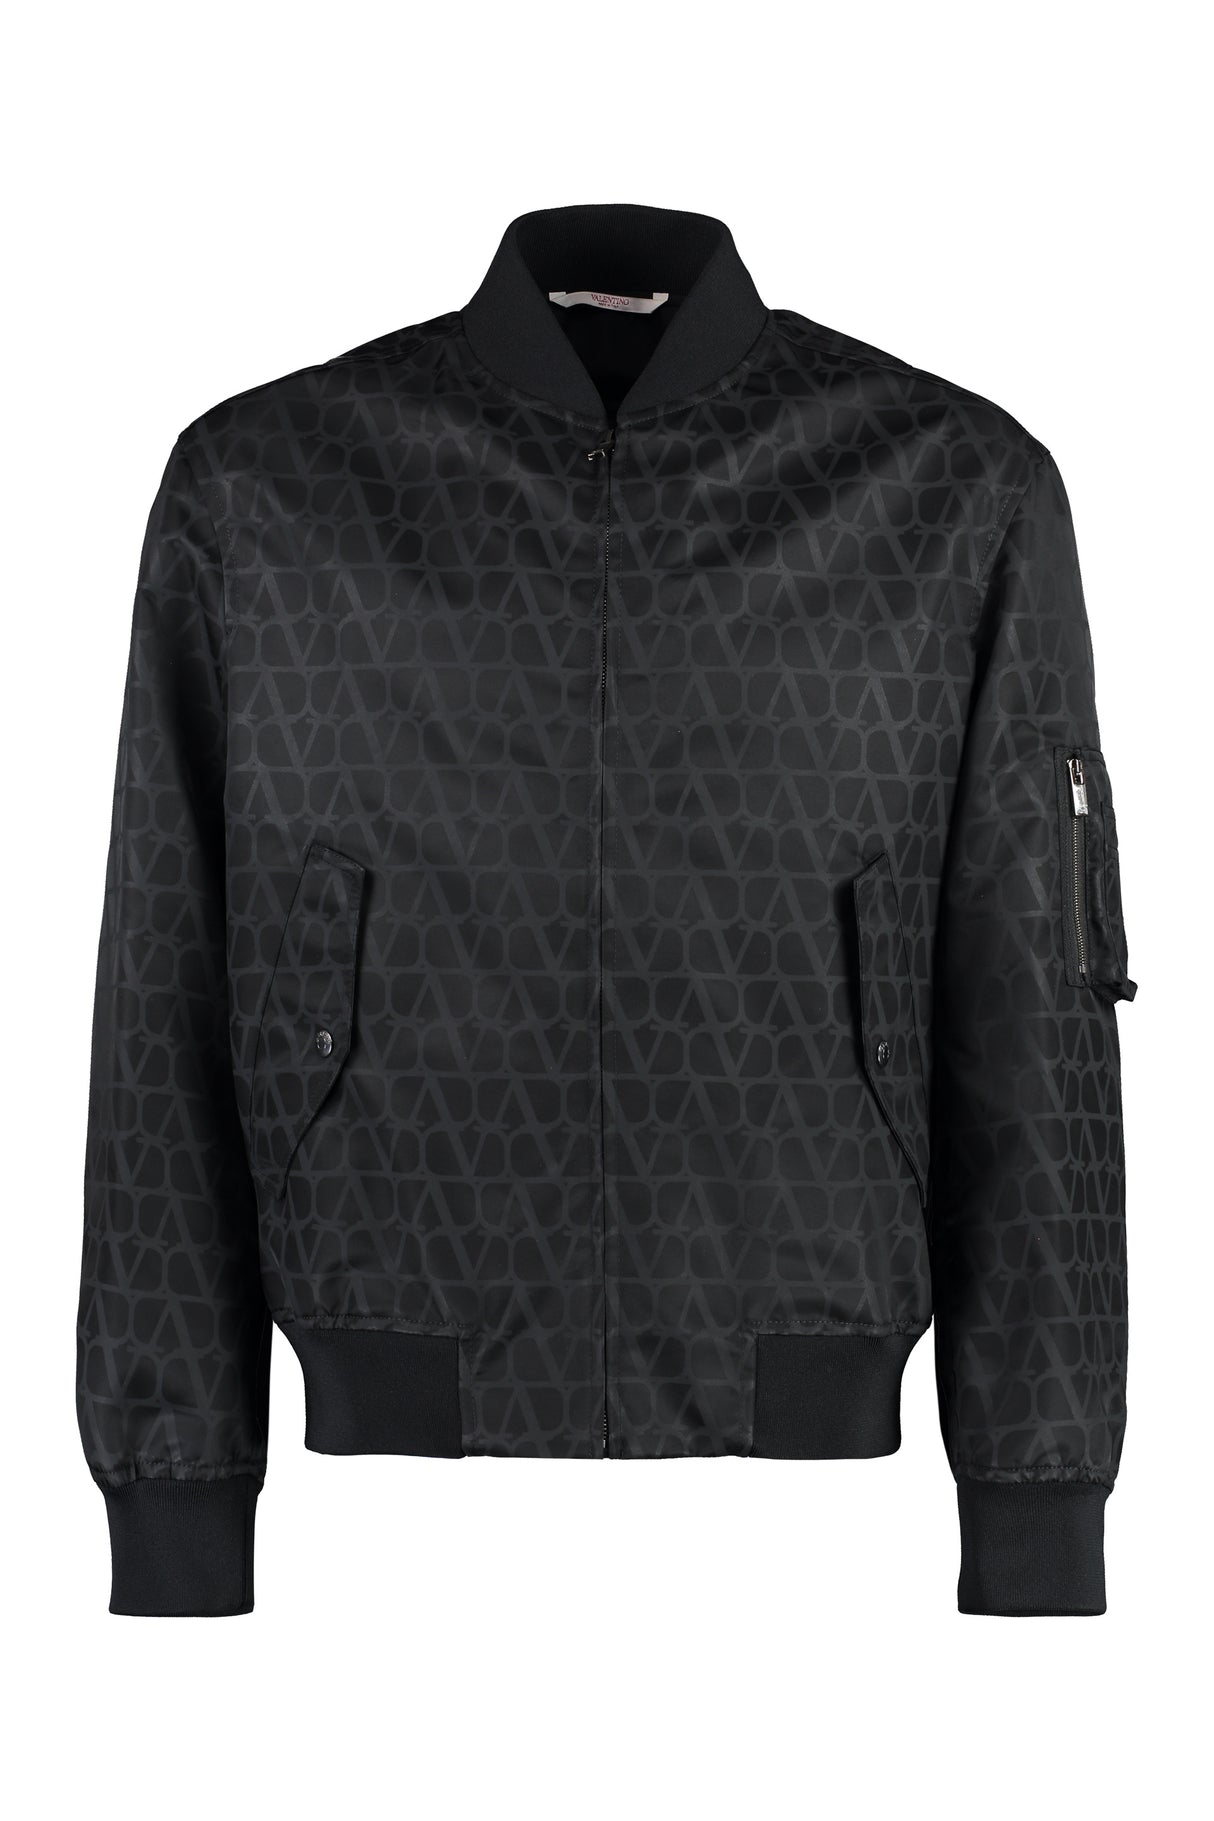 Áo khoác bomber Nylon màu đen với họa tiết đặc trưng và chi tiết cổ áo dệt kim cho nam